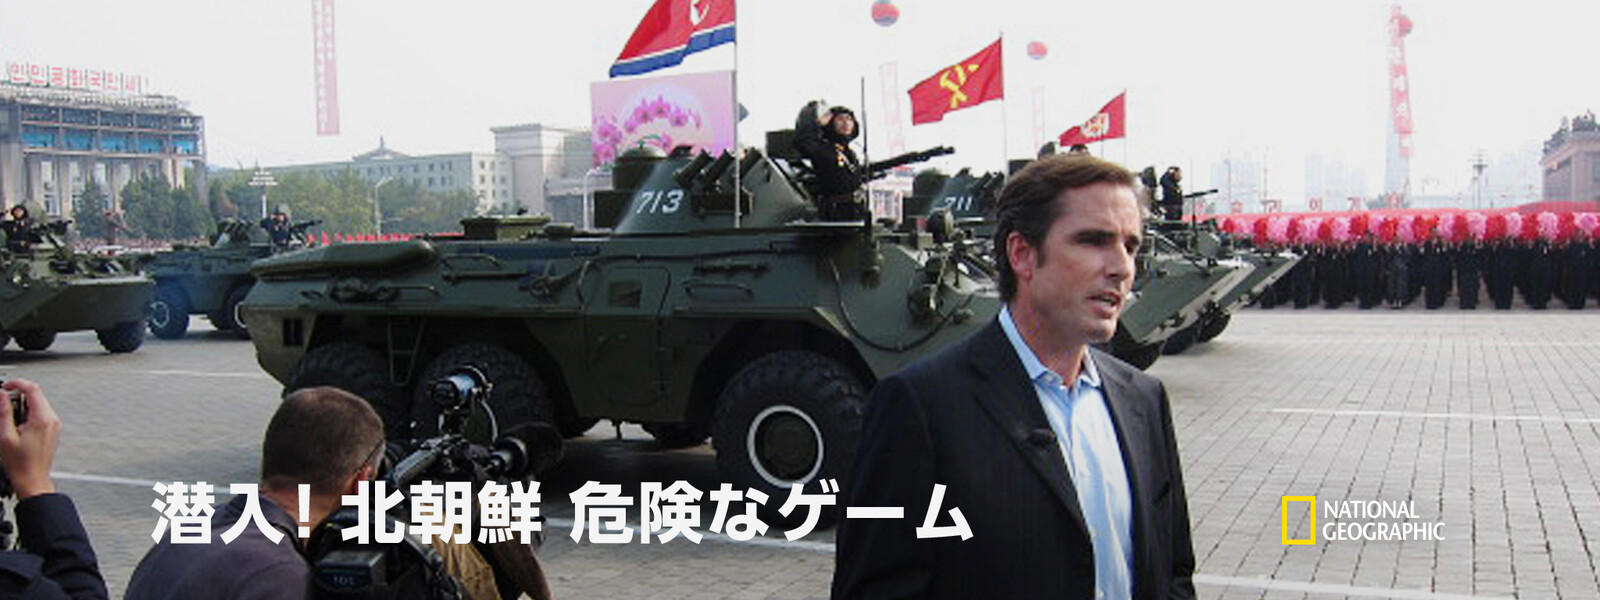 潜入! 北朝鮮：危険なゲームの動画 - 潜入! 北朝鮮：約束の行方